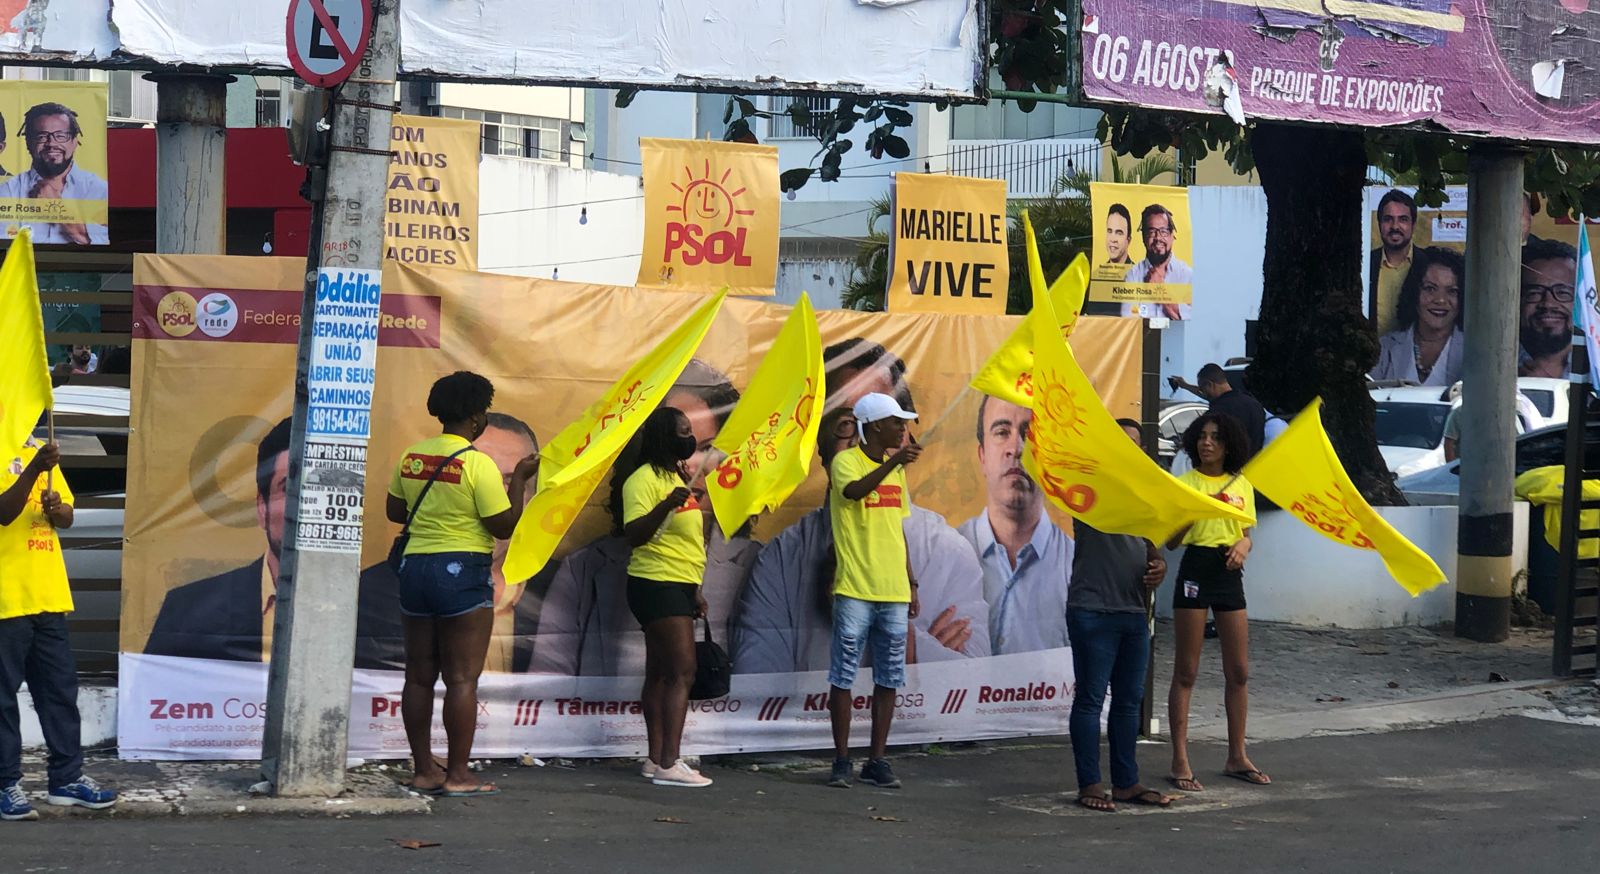 Federação PSOL e Rede lança candidatura coletiva